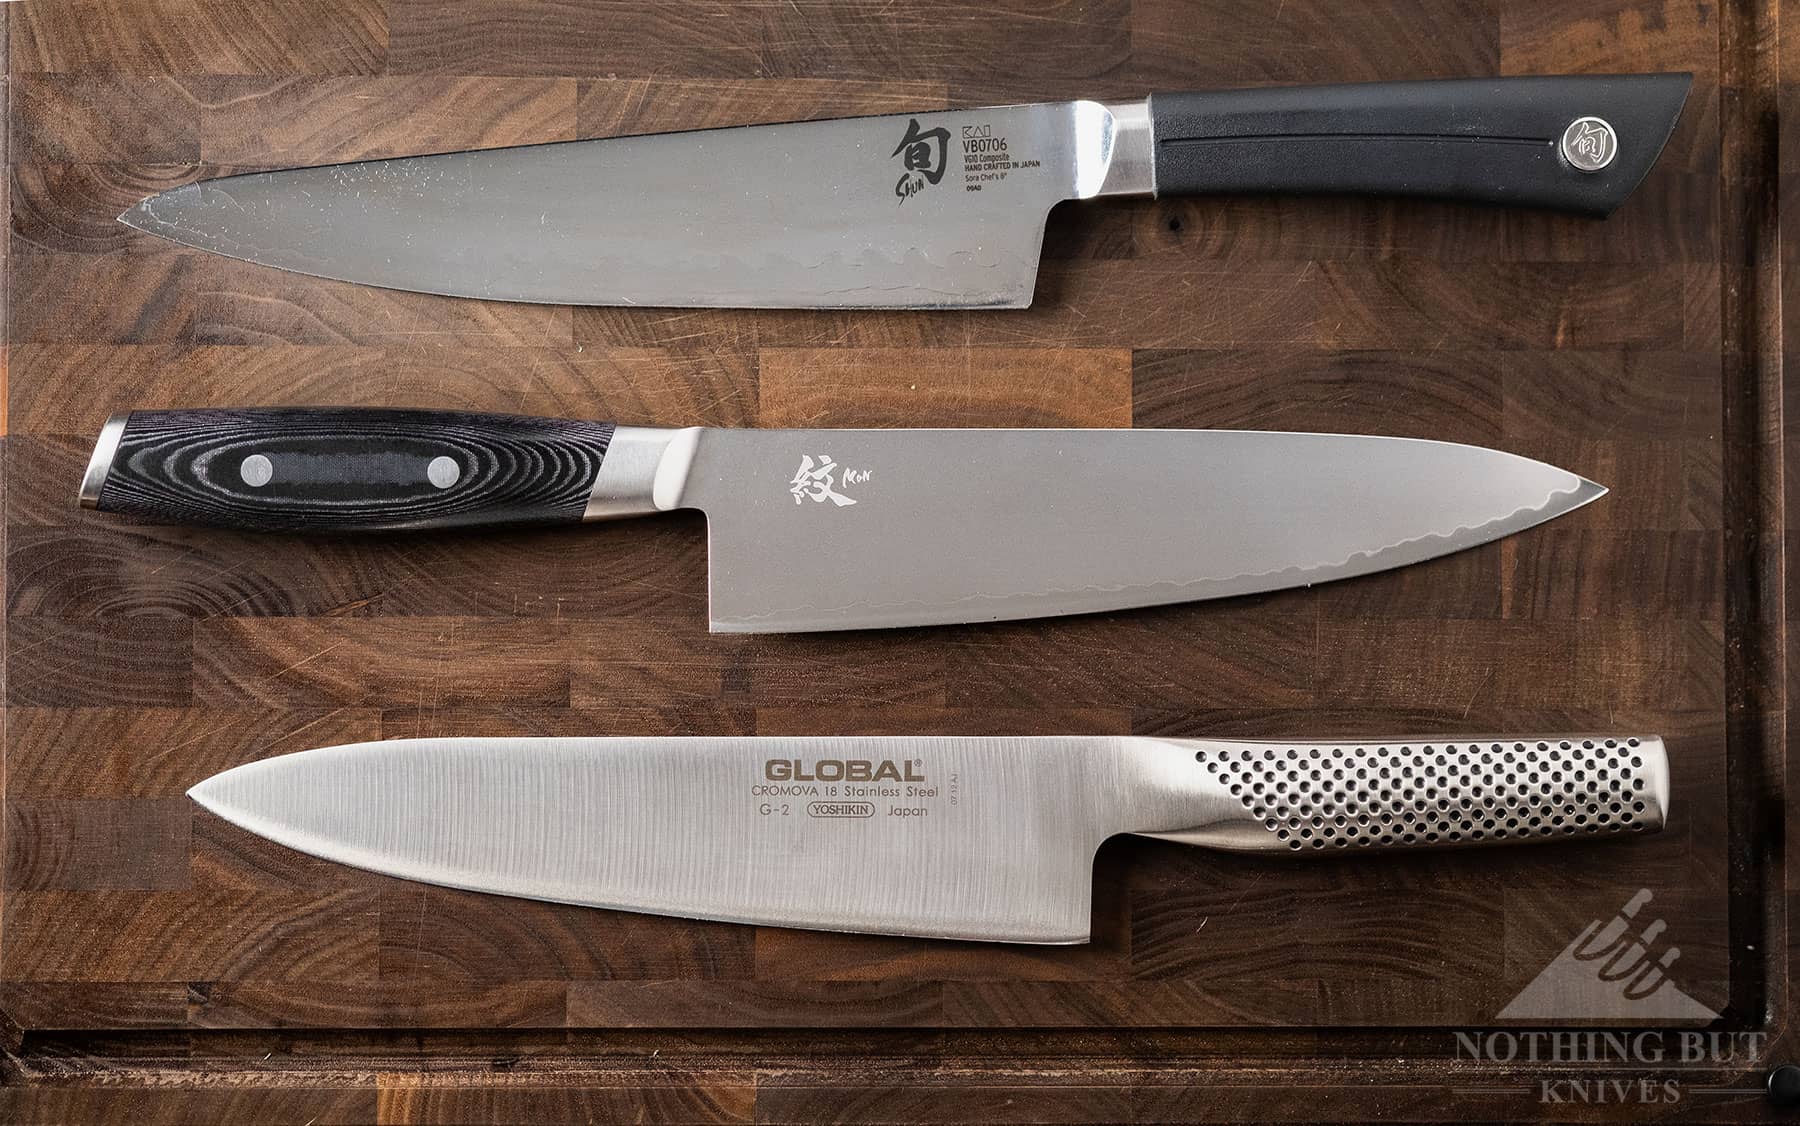 https://www.nothingbutknives.com/wp-content/uploads/2022/06/Global-Chef-Knife-Alternatives.jpg